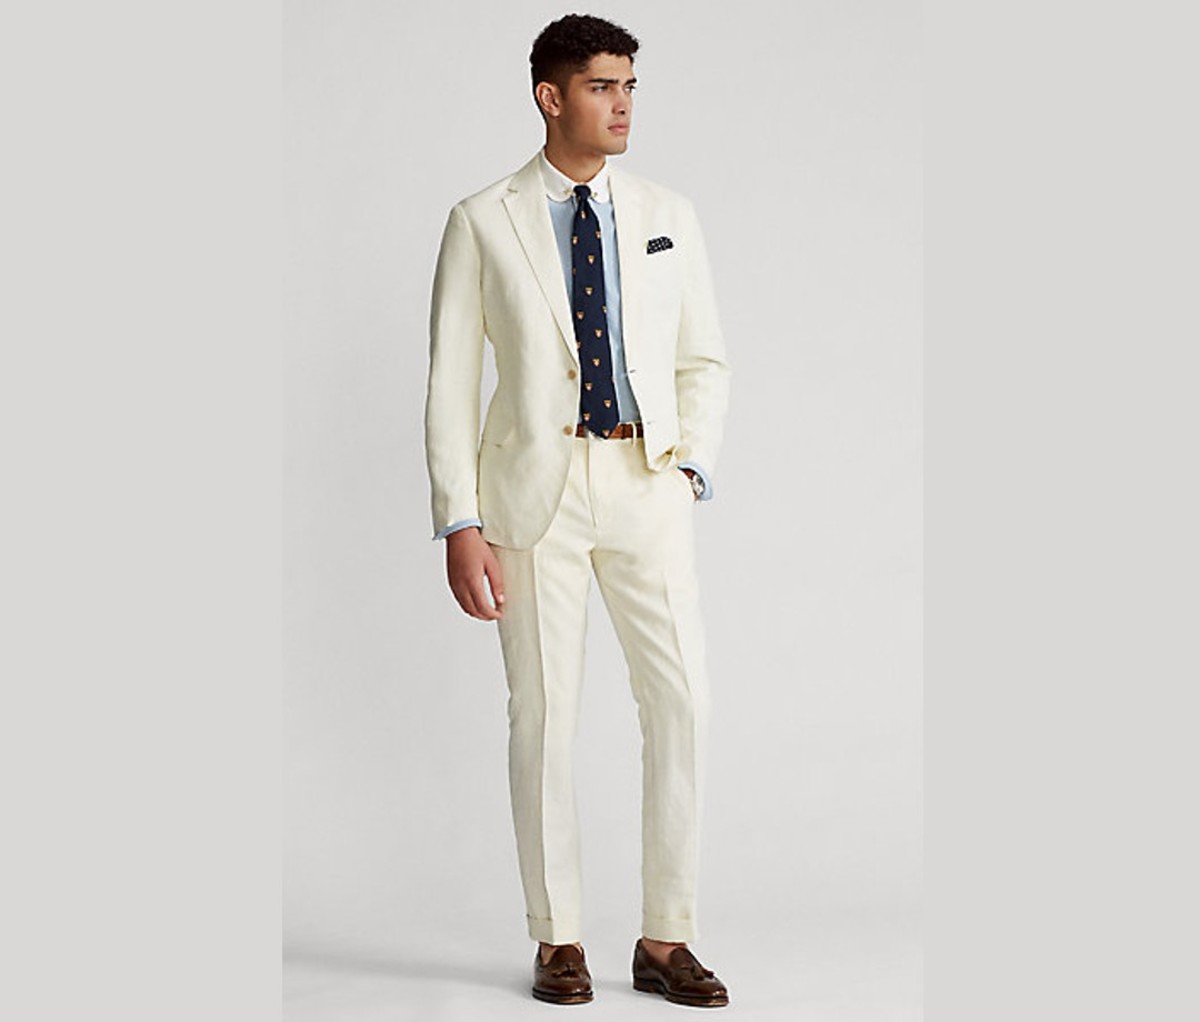 Polo Ralph Lauren—Polo Soft Slub Linen Suit Jacket and Polo Soft Slub Linen Suit Trouser